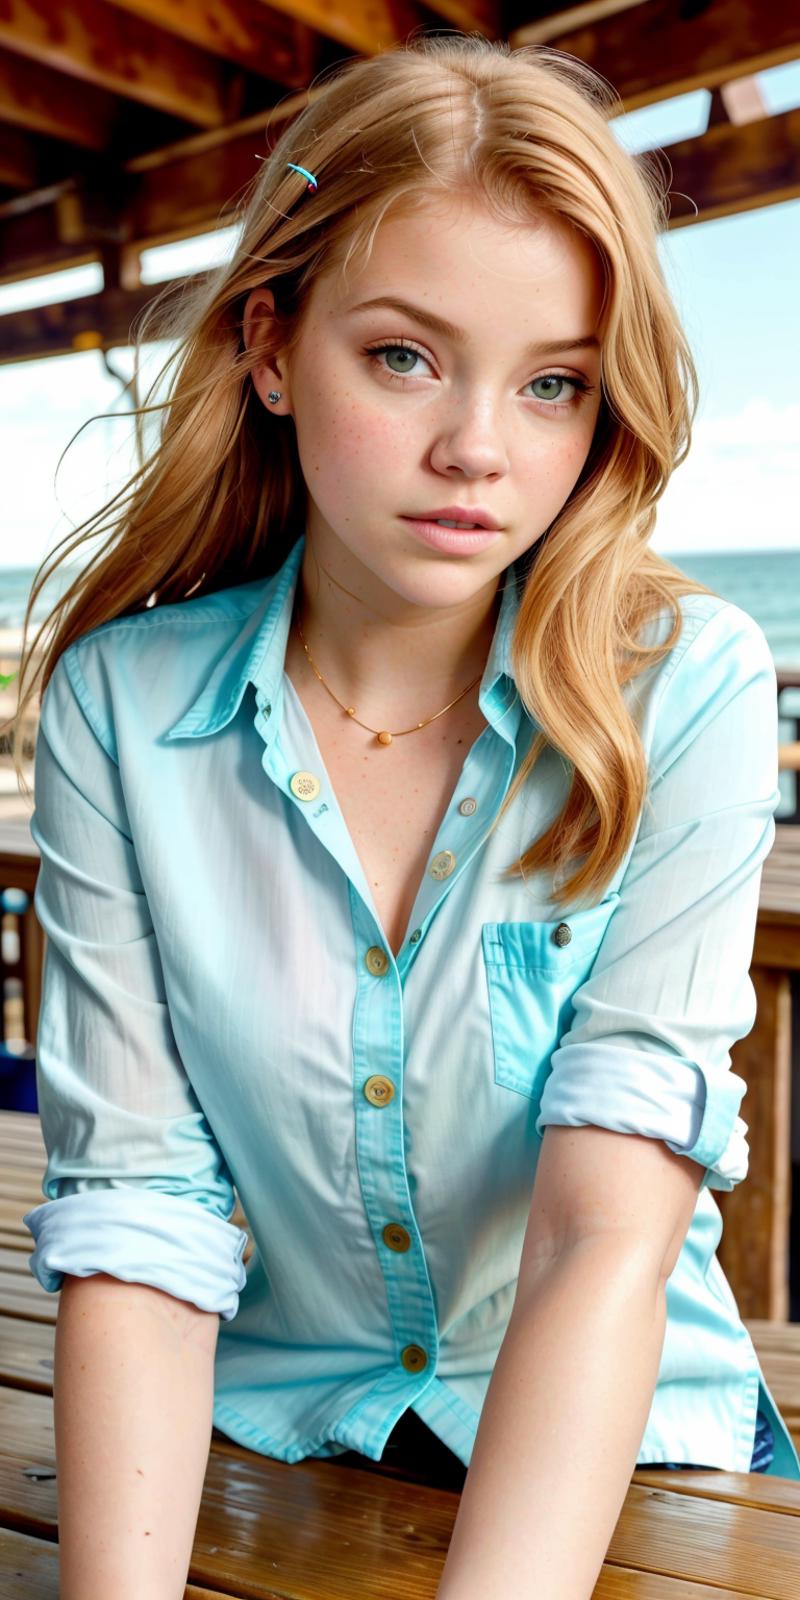 A beautiful young woman wearing a light blue shirt.